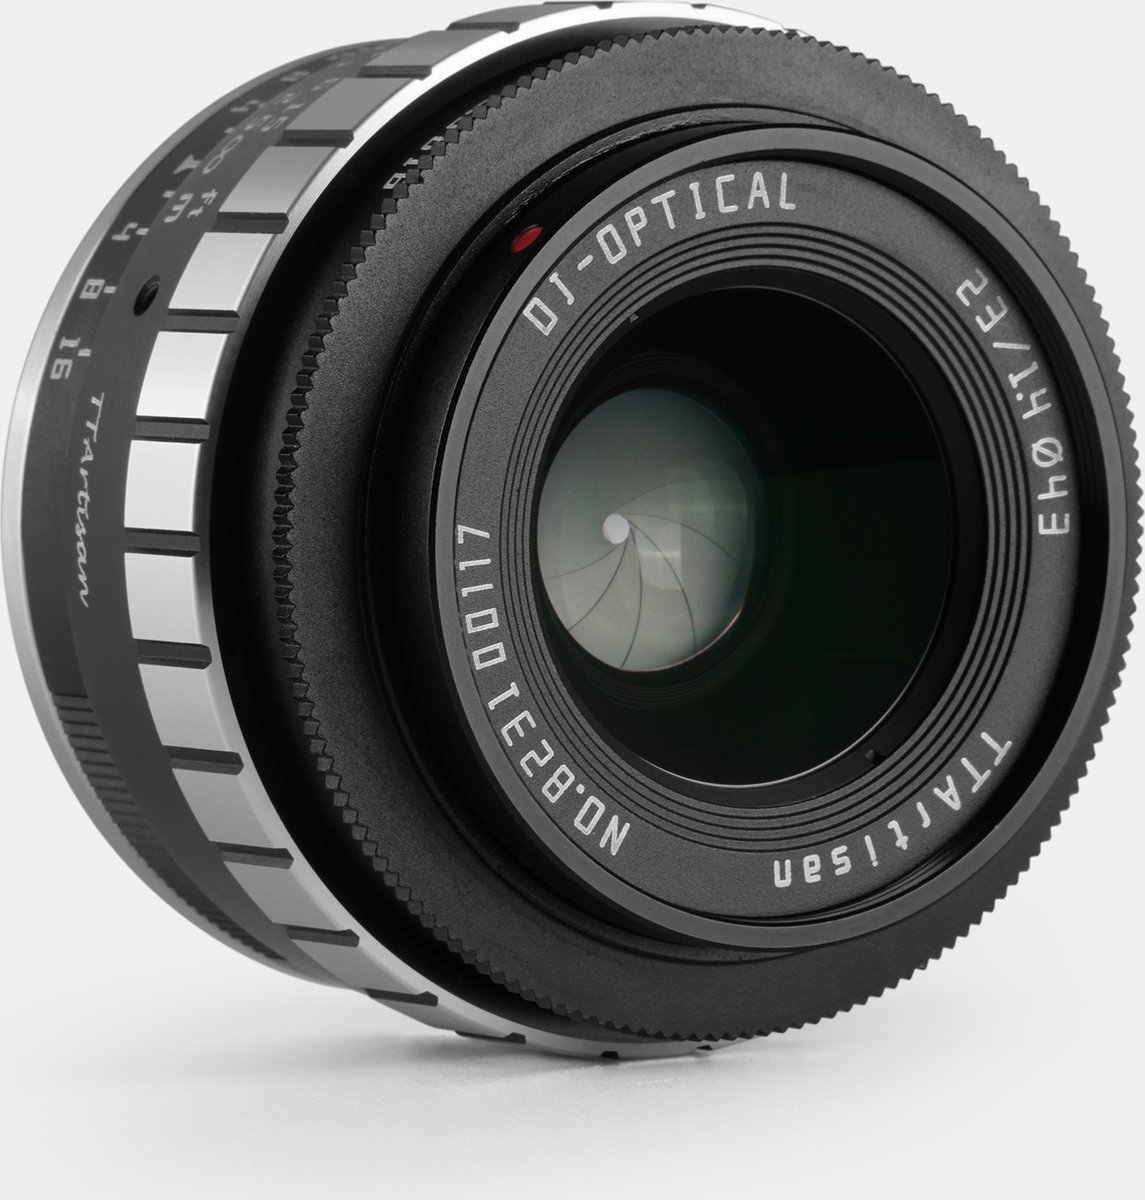 TT Artisan - Cameralens - 23mm F1.4 APS-C Voor Panasonic/Olympus M43-vatting, zwart + zilver